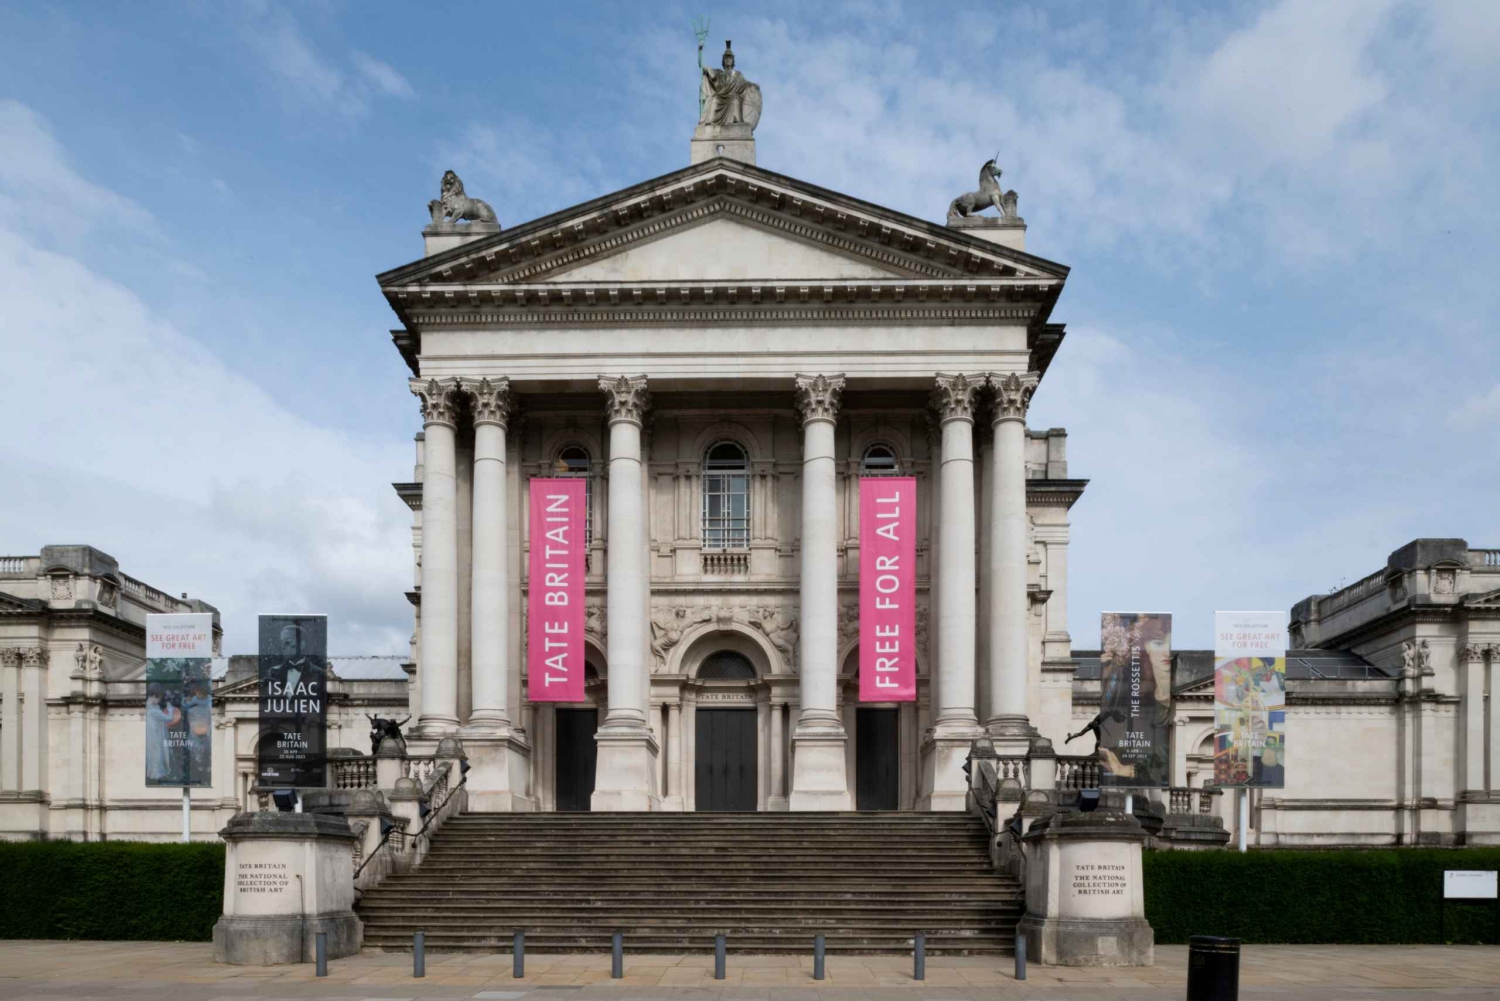 London: Offisiell oppdagelsesreise til Tate Britain